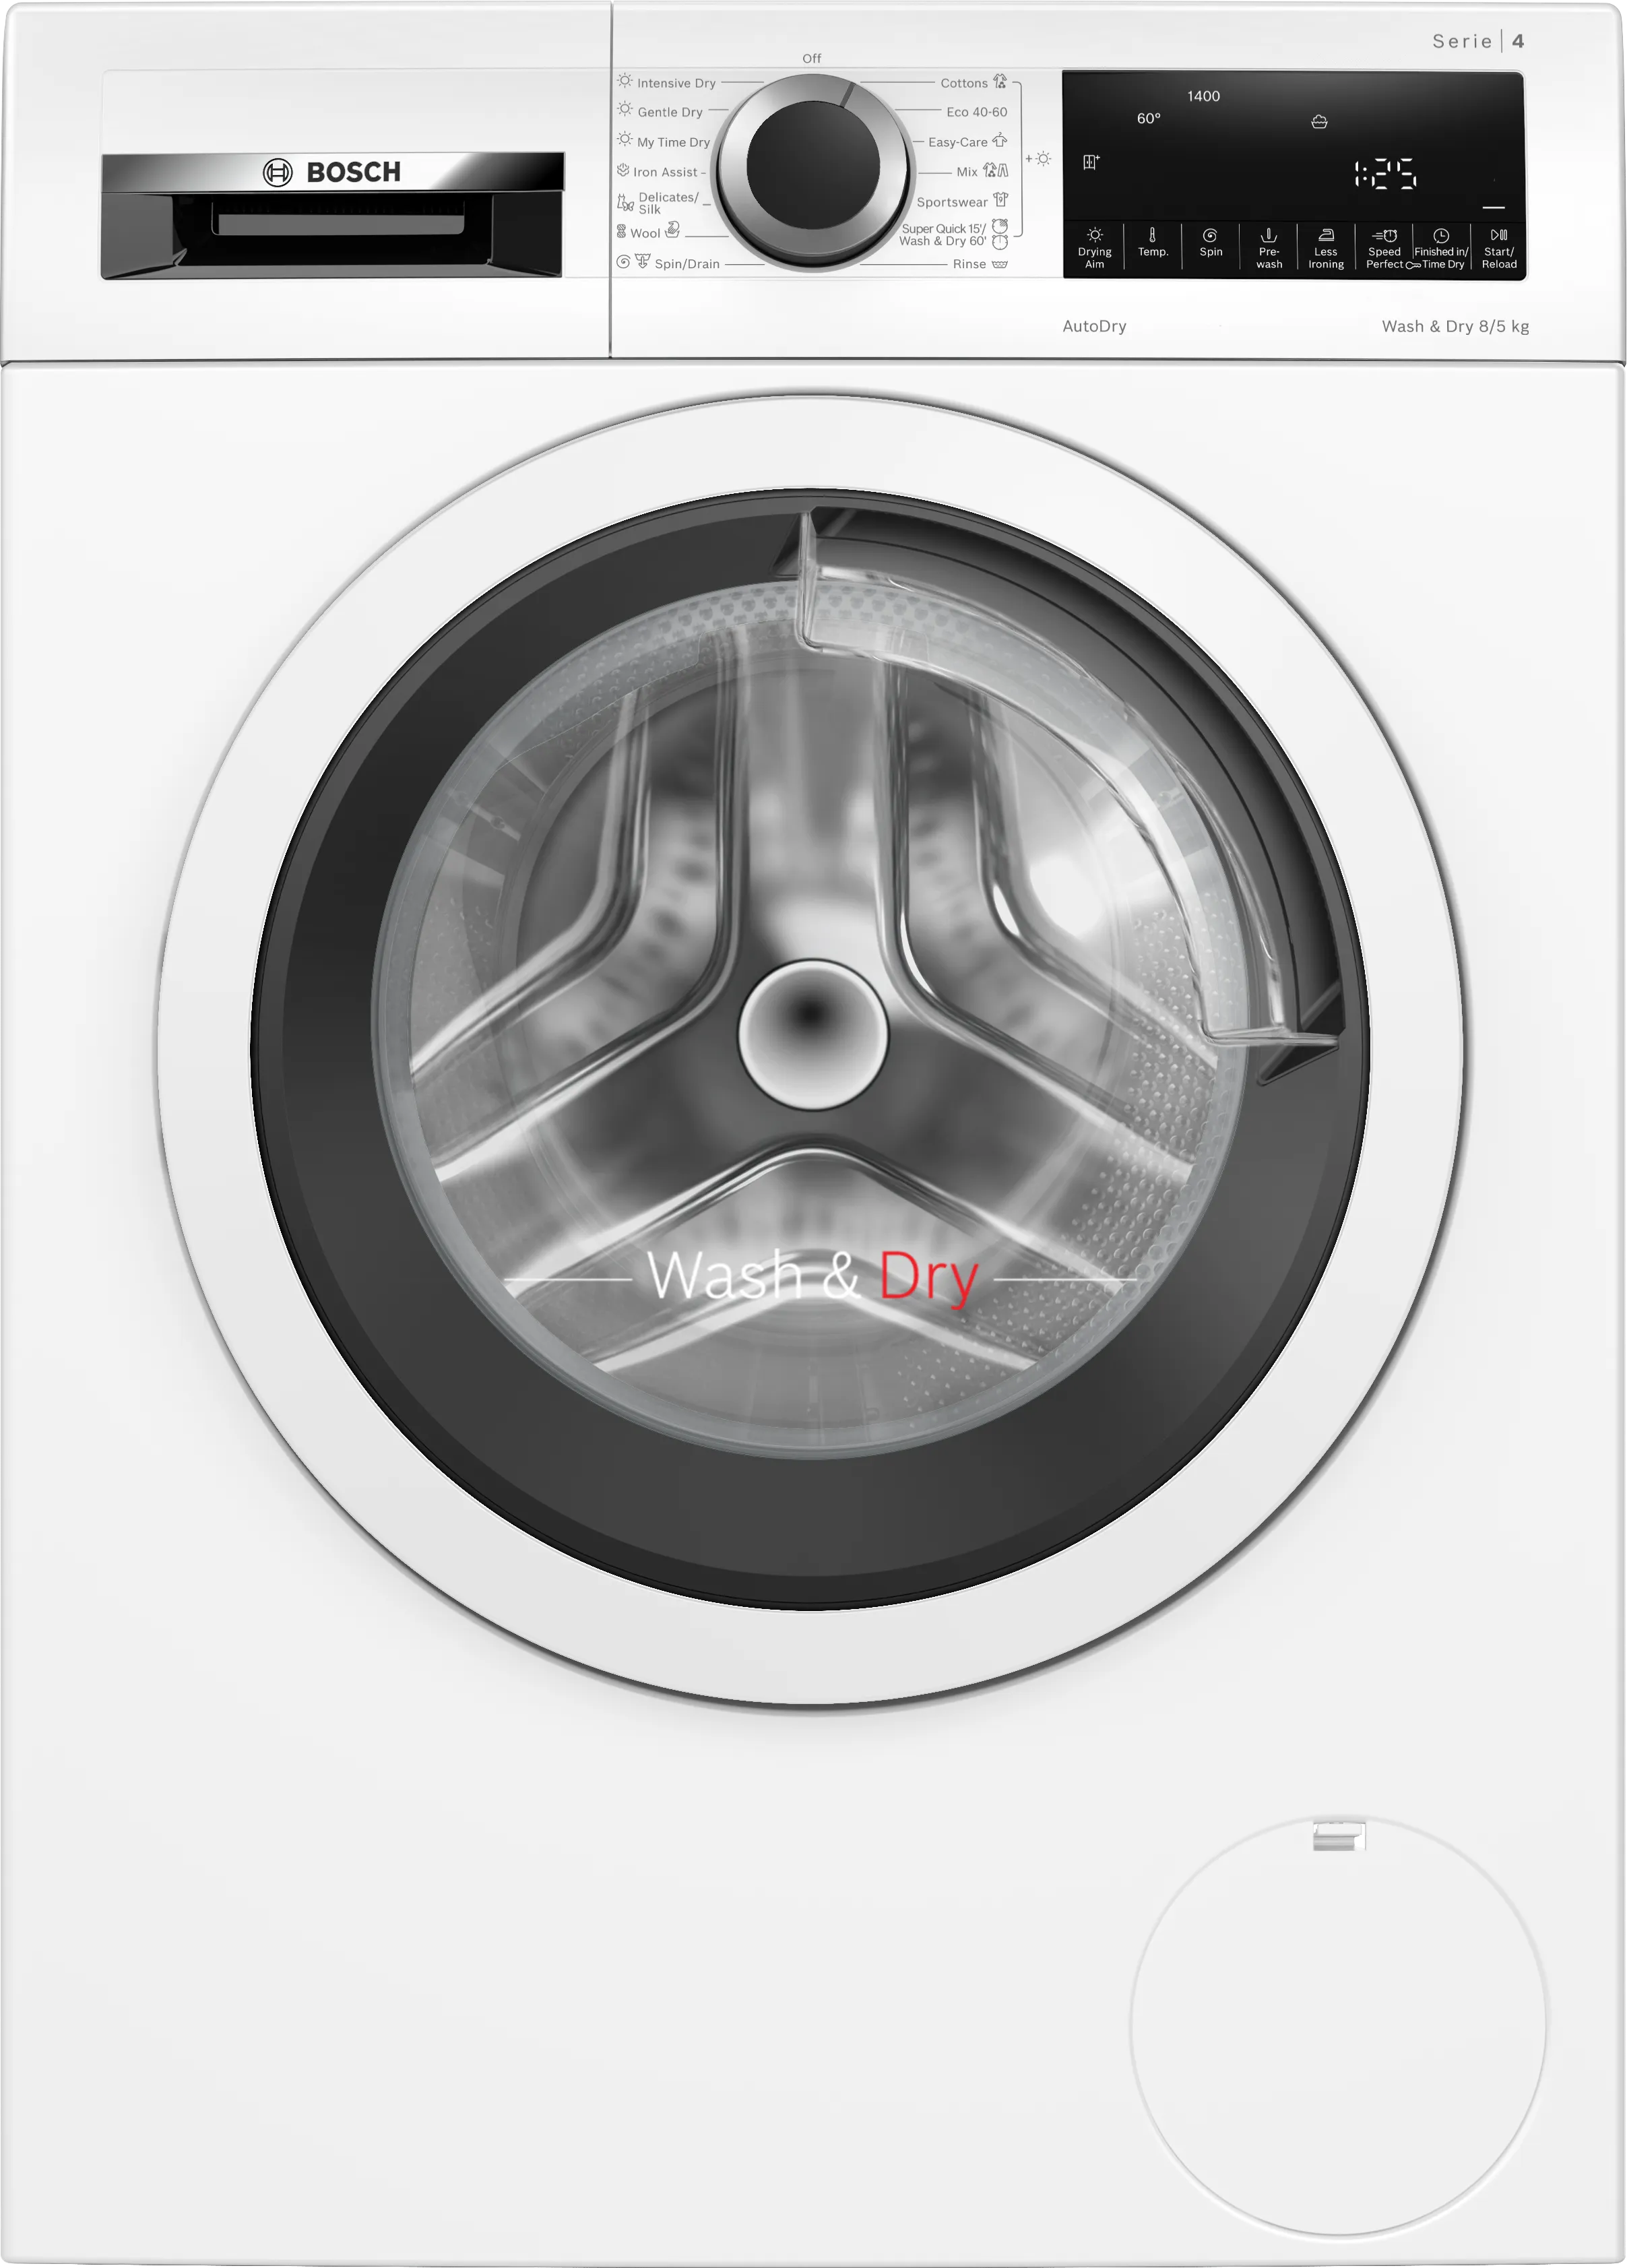 Series 4 washer-dryer 8/5 kg 1400 rpm 